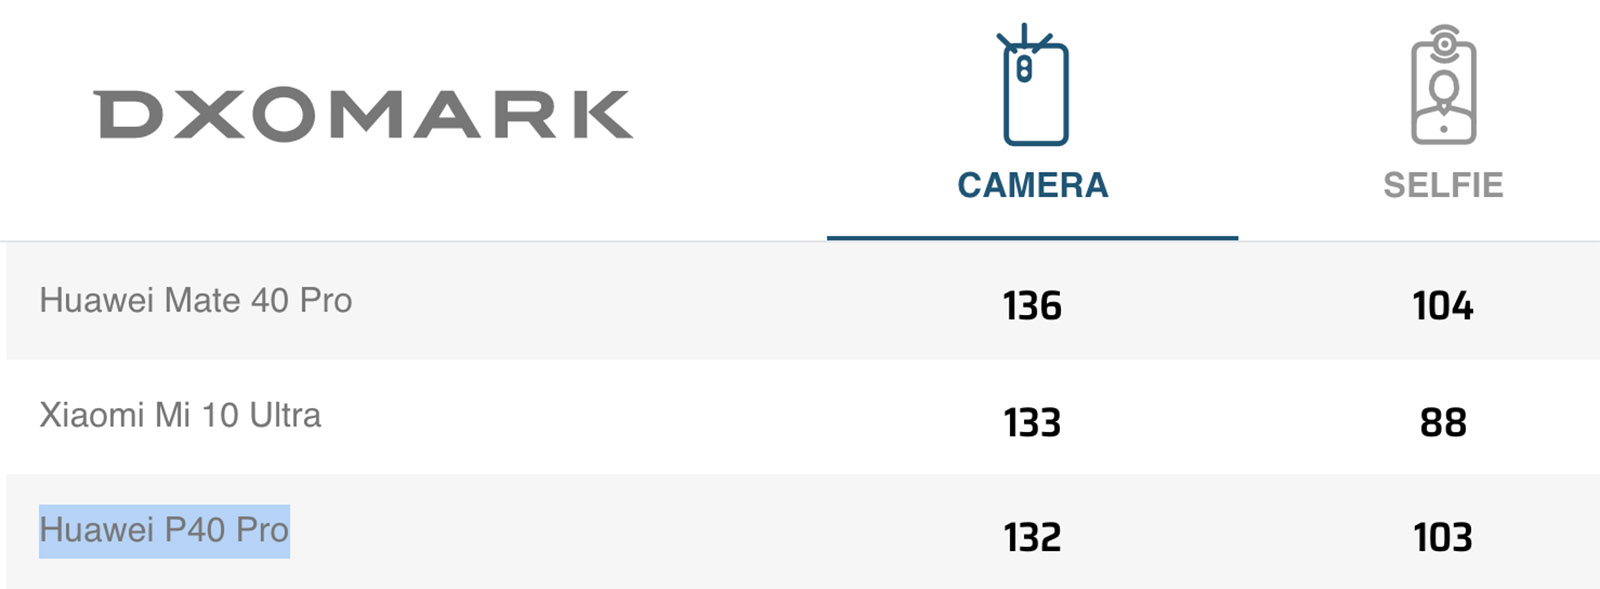 Huawei P40 Pro по-прежнему входит в тройку лучших камерофонов рейтинга DXOMARK